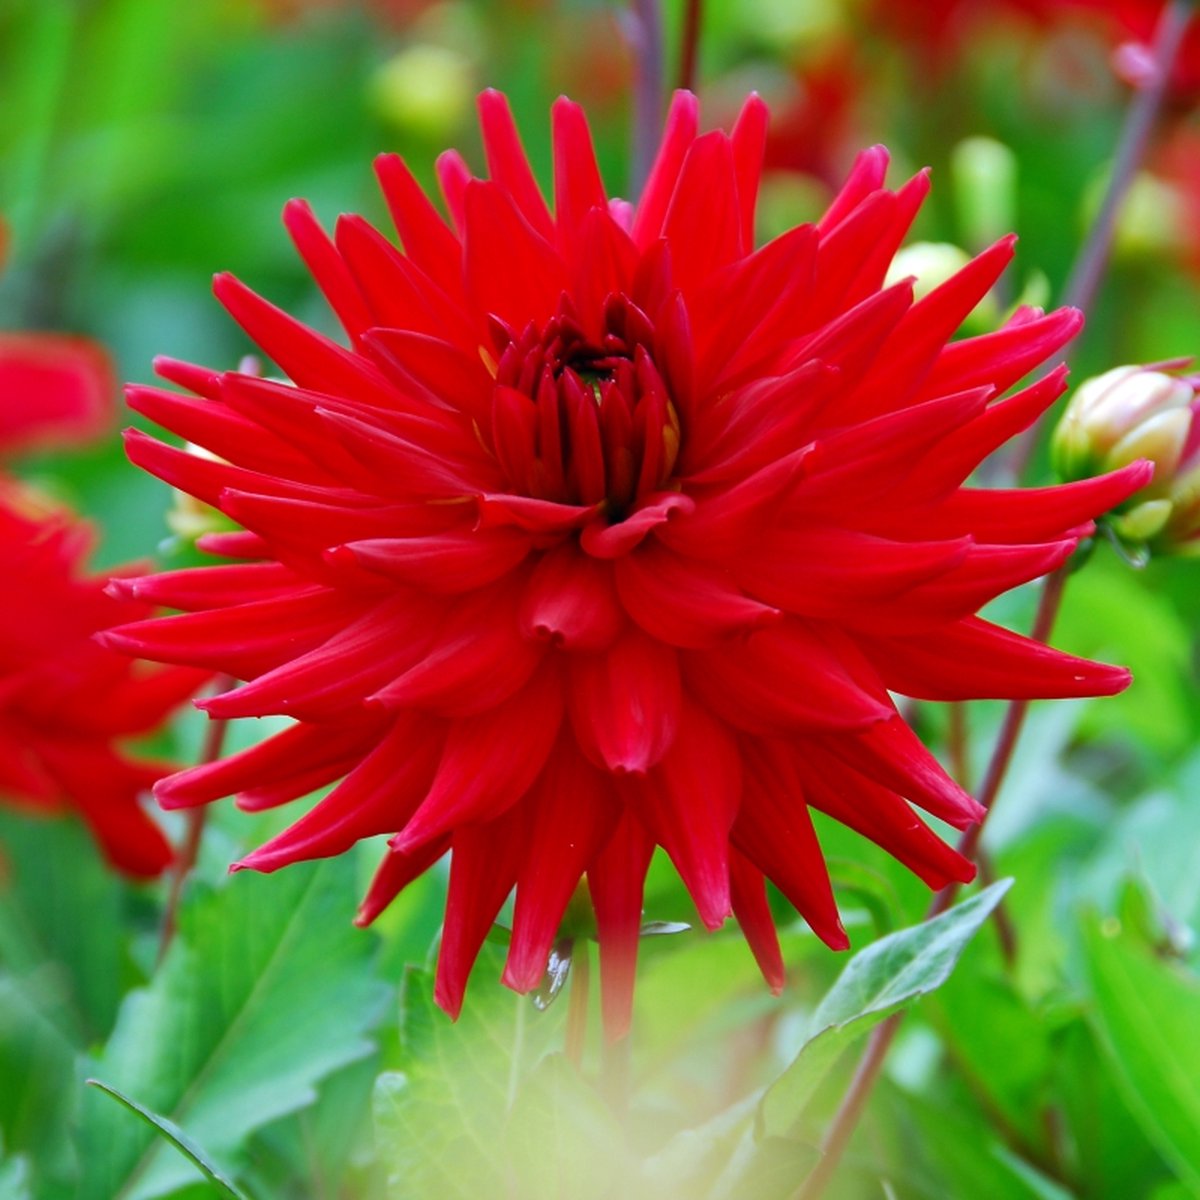 Dahlia Red Pygmy | 3 stuks | Cactus Dahlia | Knol | Geschikt voor in Pot | Rood | Dahlia Knollen van Top Kwaliteit | 100% Bloeigarantie | QFB Gardening